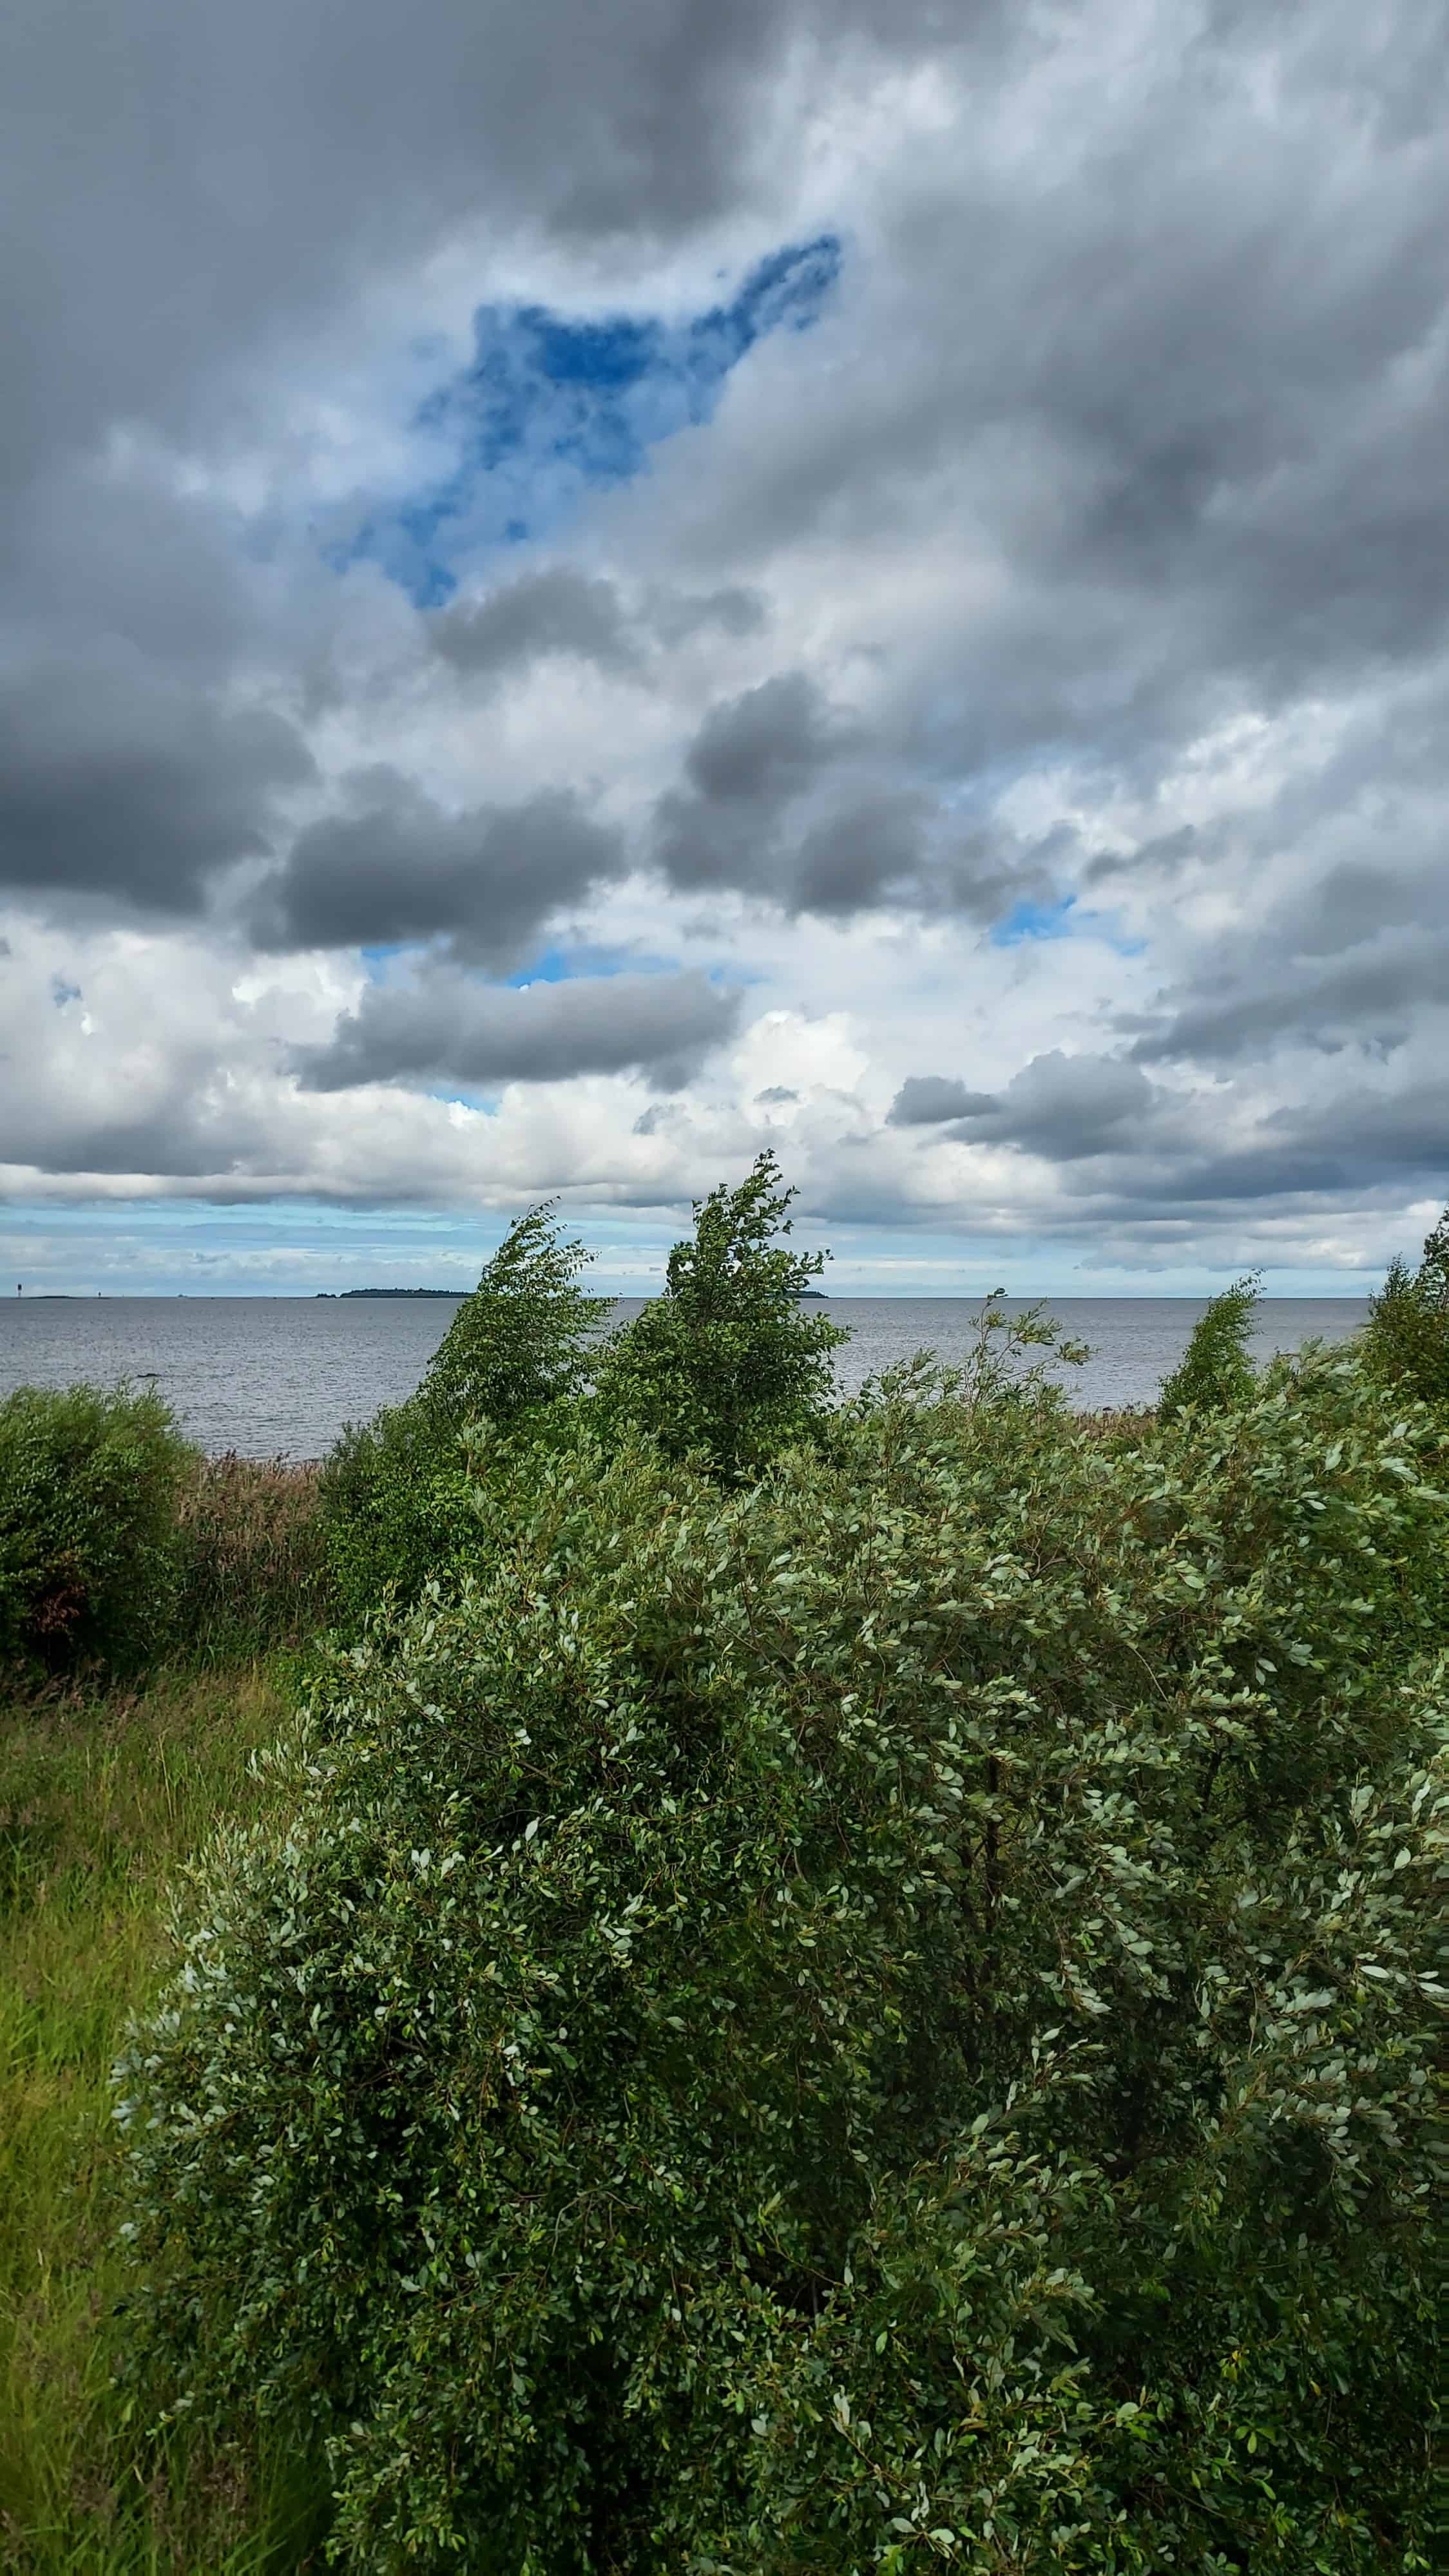 Maisema Vanhan Kallen kinttupolun päässä olevalta Harrinniemen lintutornilta kohti merta. Sää on tuulinen ja kuvassa puut huojuvat tuulessa.